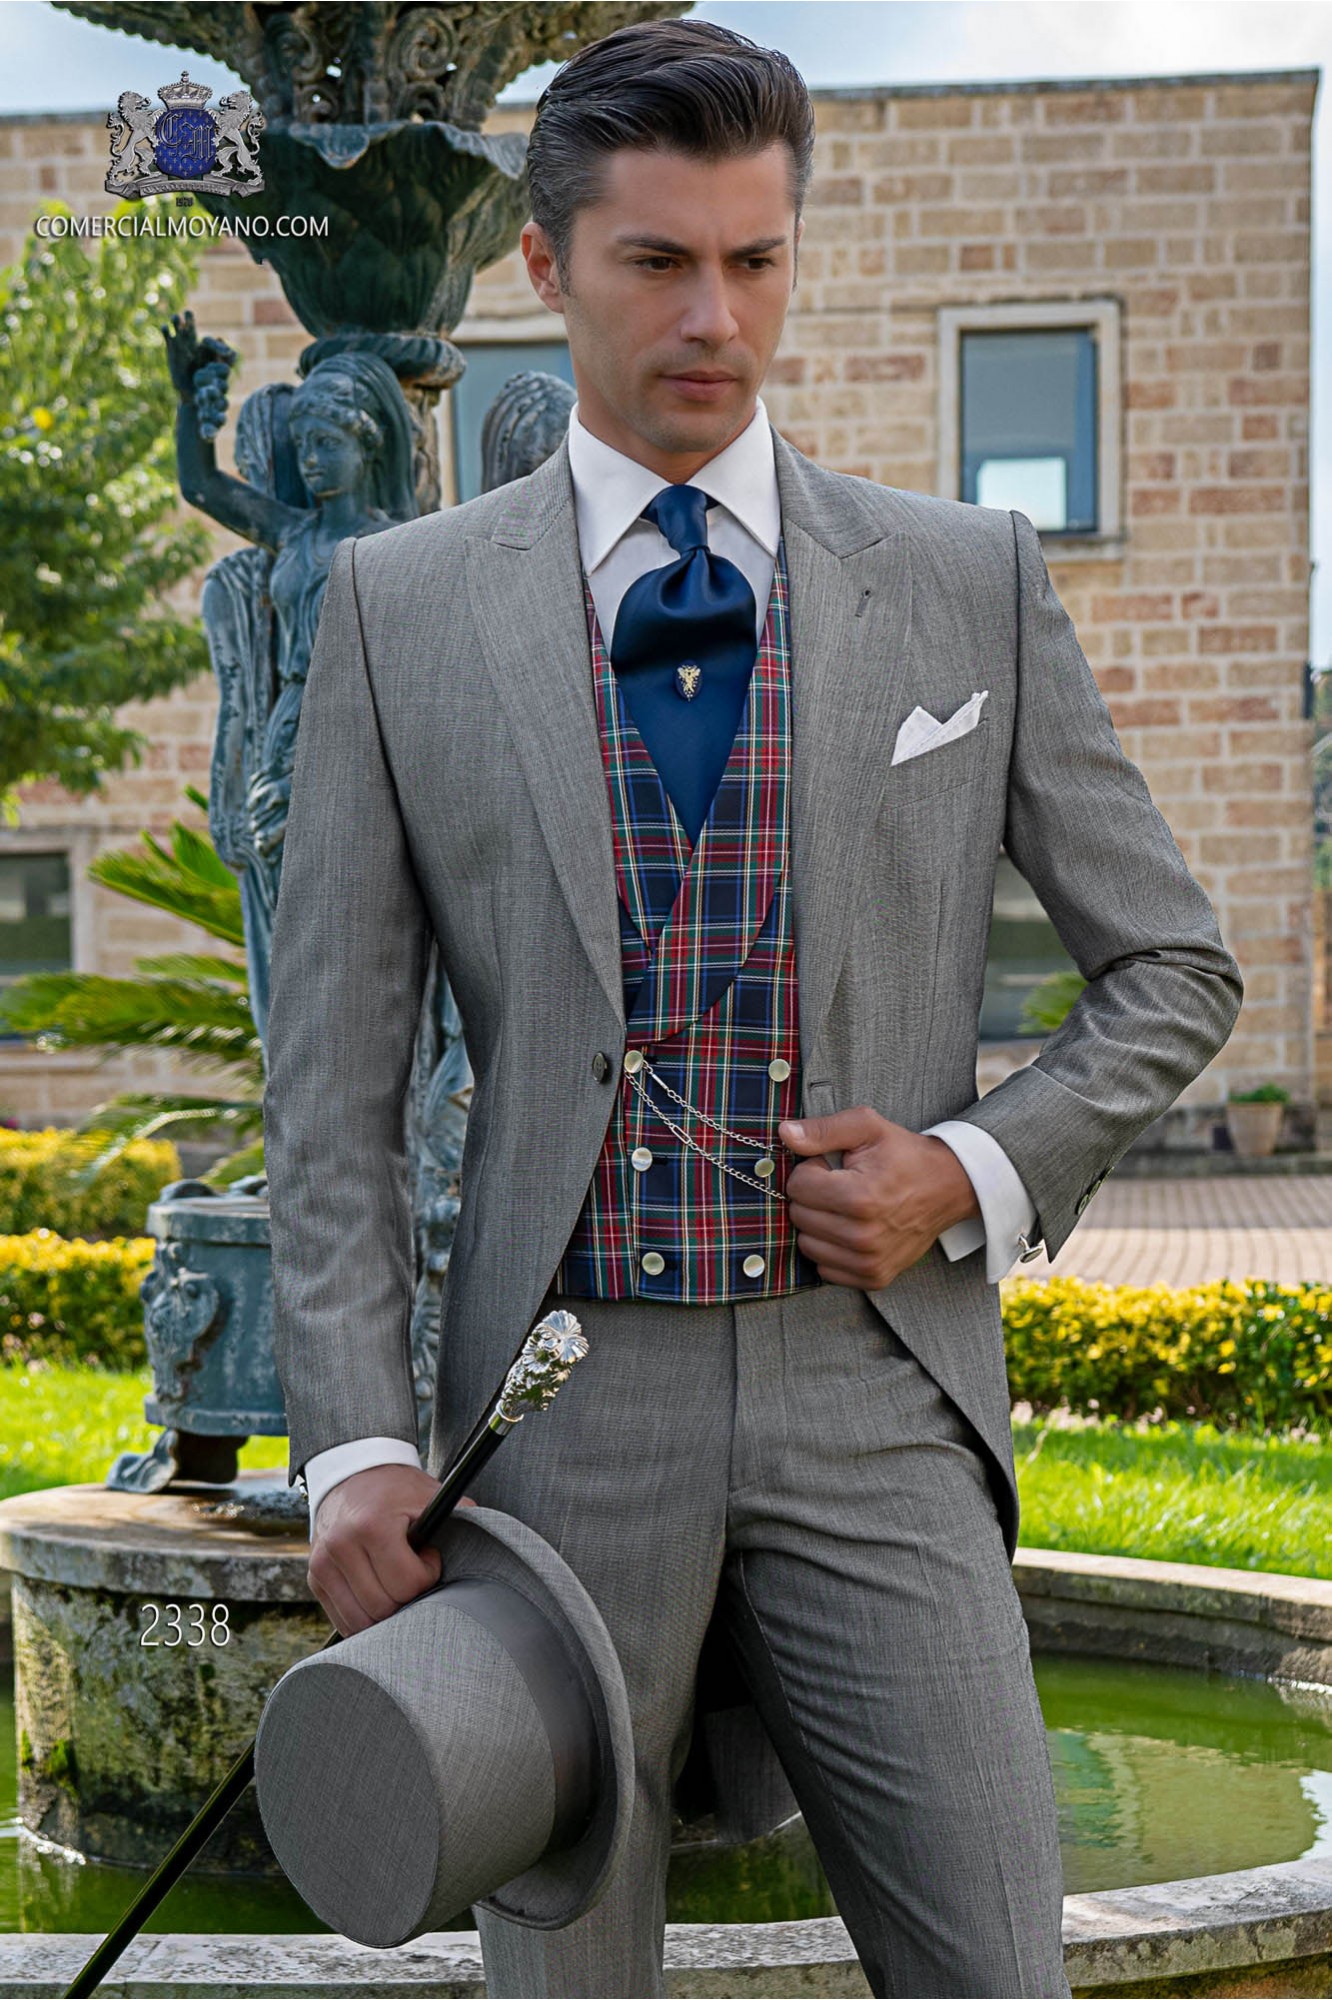 Chaqué italiano de elegante corte “Slim” gris claro. Tejido lana de alpaca modelo: 2338 Mario Moyano colección Gentleman